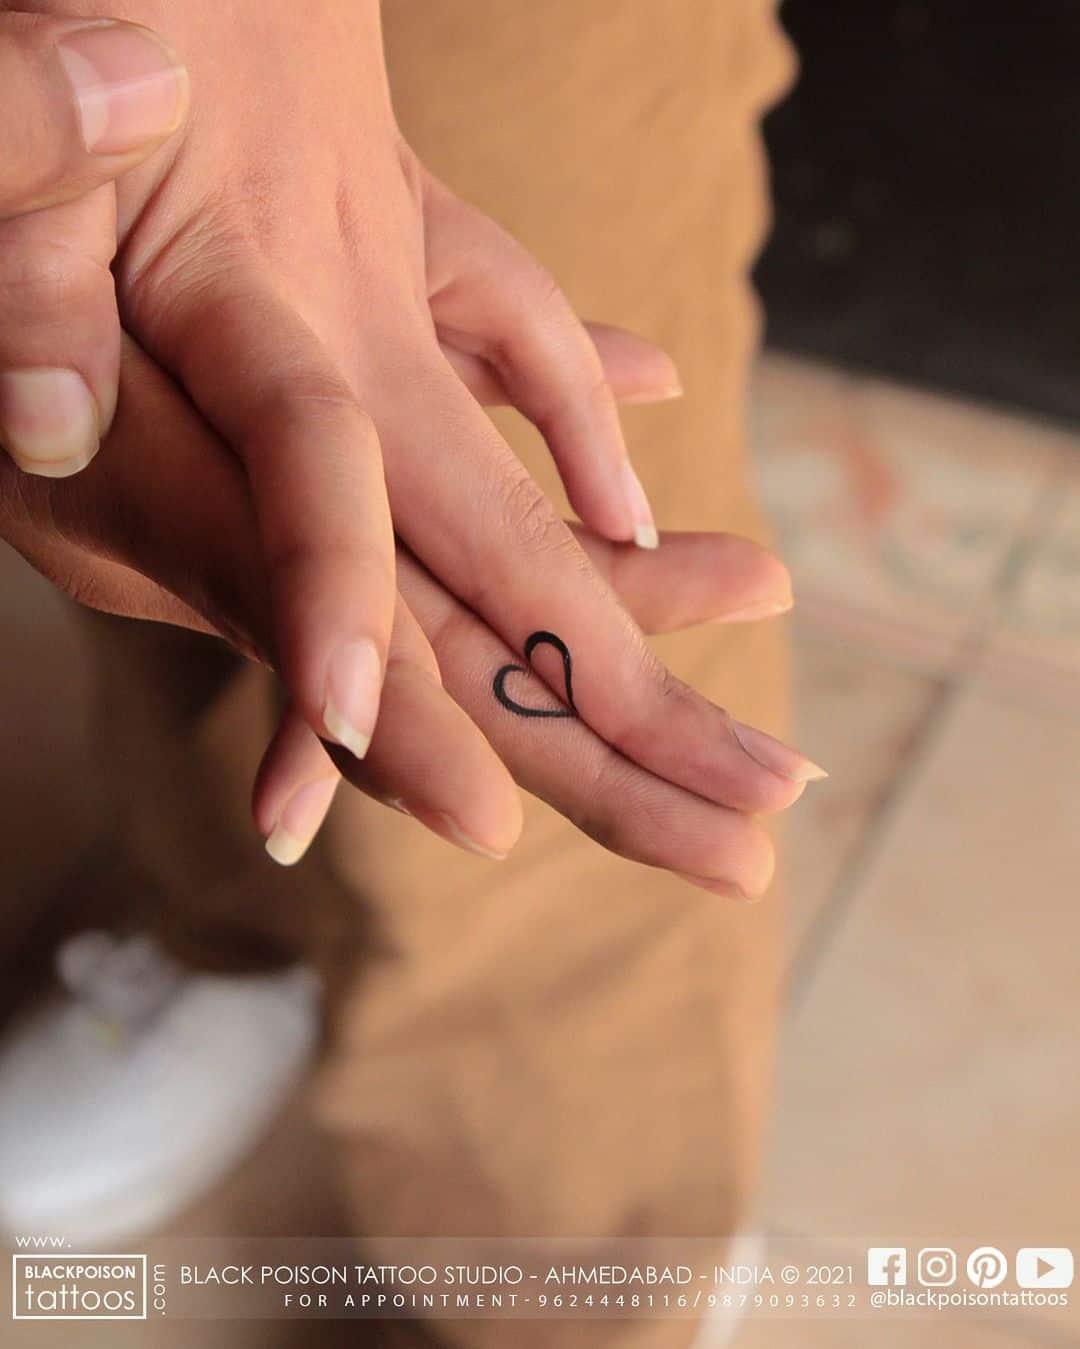 Couple Heart tattoo on fingers